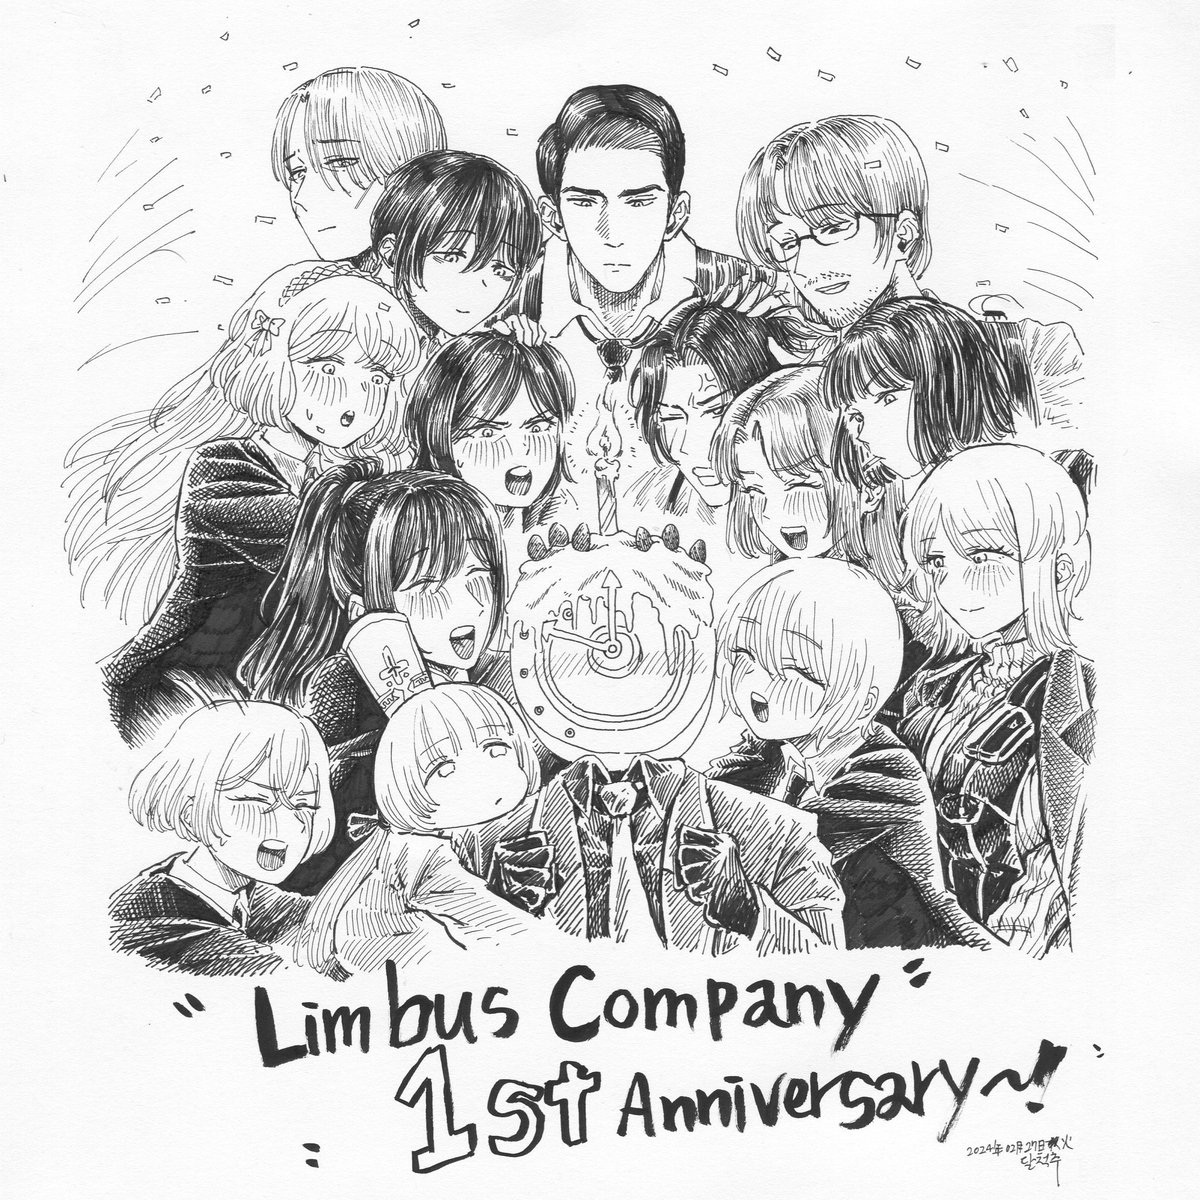 림버스 1주년!! Limbus Company 1st Anniversary!! #Limbus_Compnay #LCB #リンバス #천국으로_가는_버스에_올라타